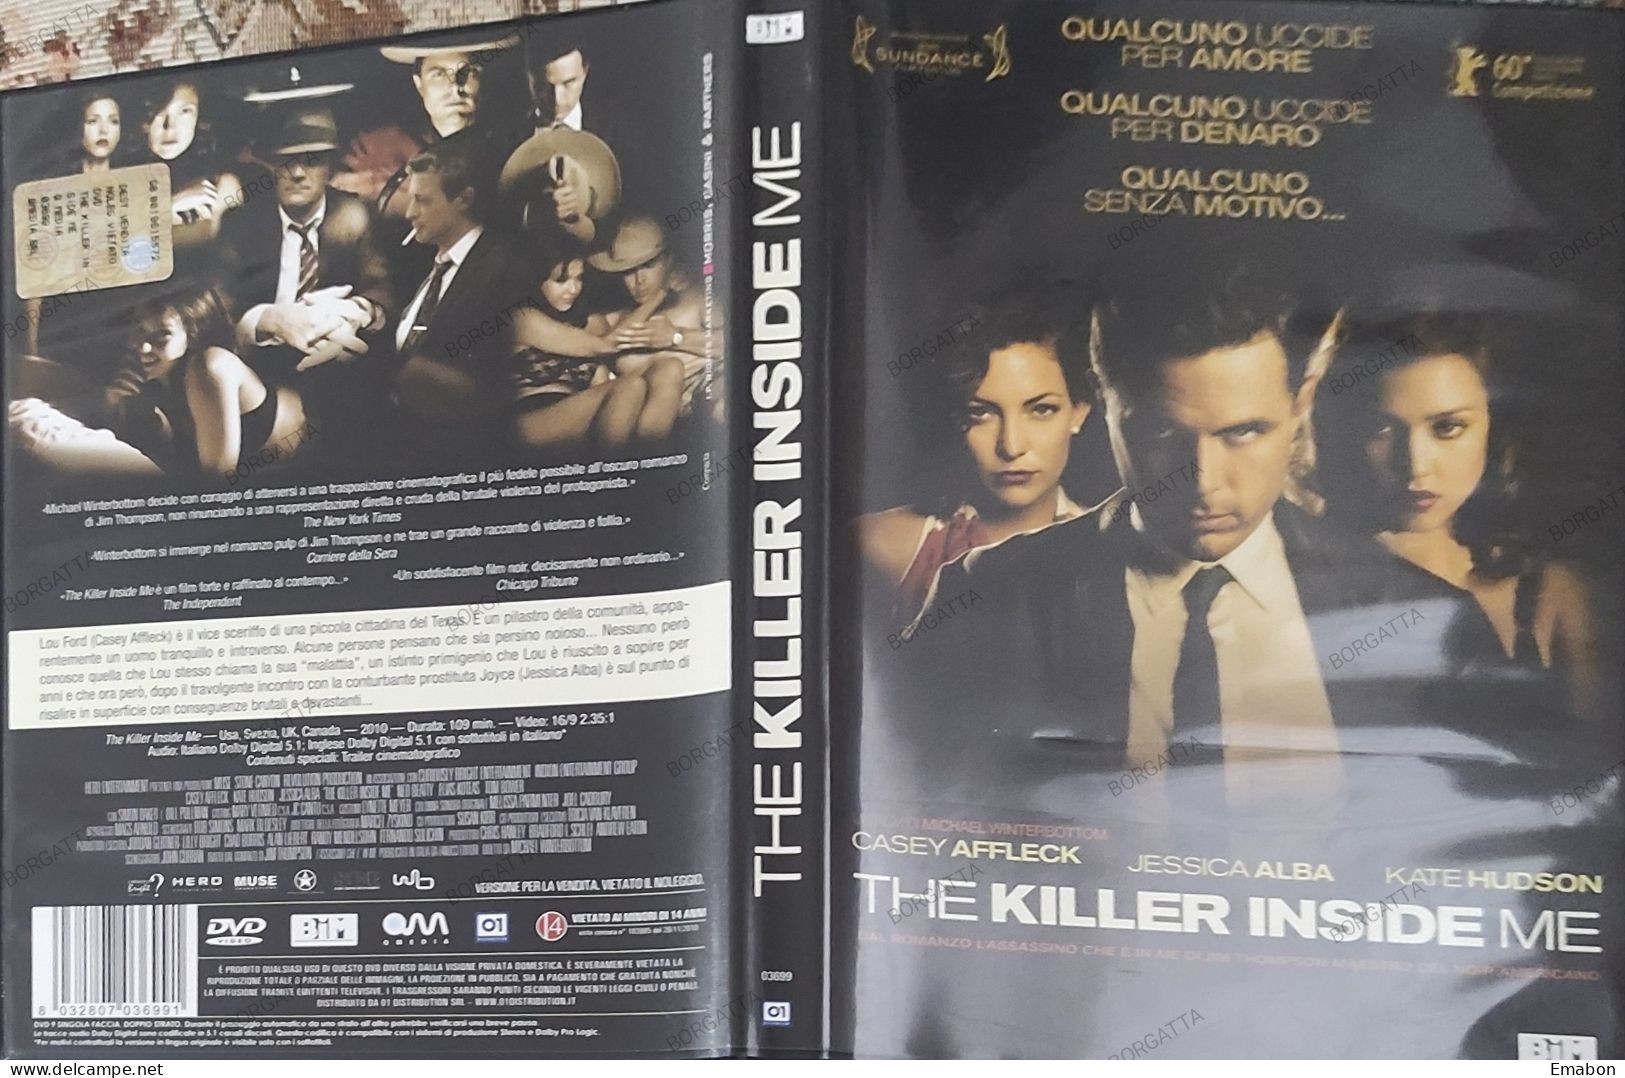 BORGATTA - NOIR - Dvd  " THE KILLER INSIDE ME  " CASEY AFFECK, JESSICA ALBA - PAL 2 - BIM 2011-  USATO In Buono Stato - Drama